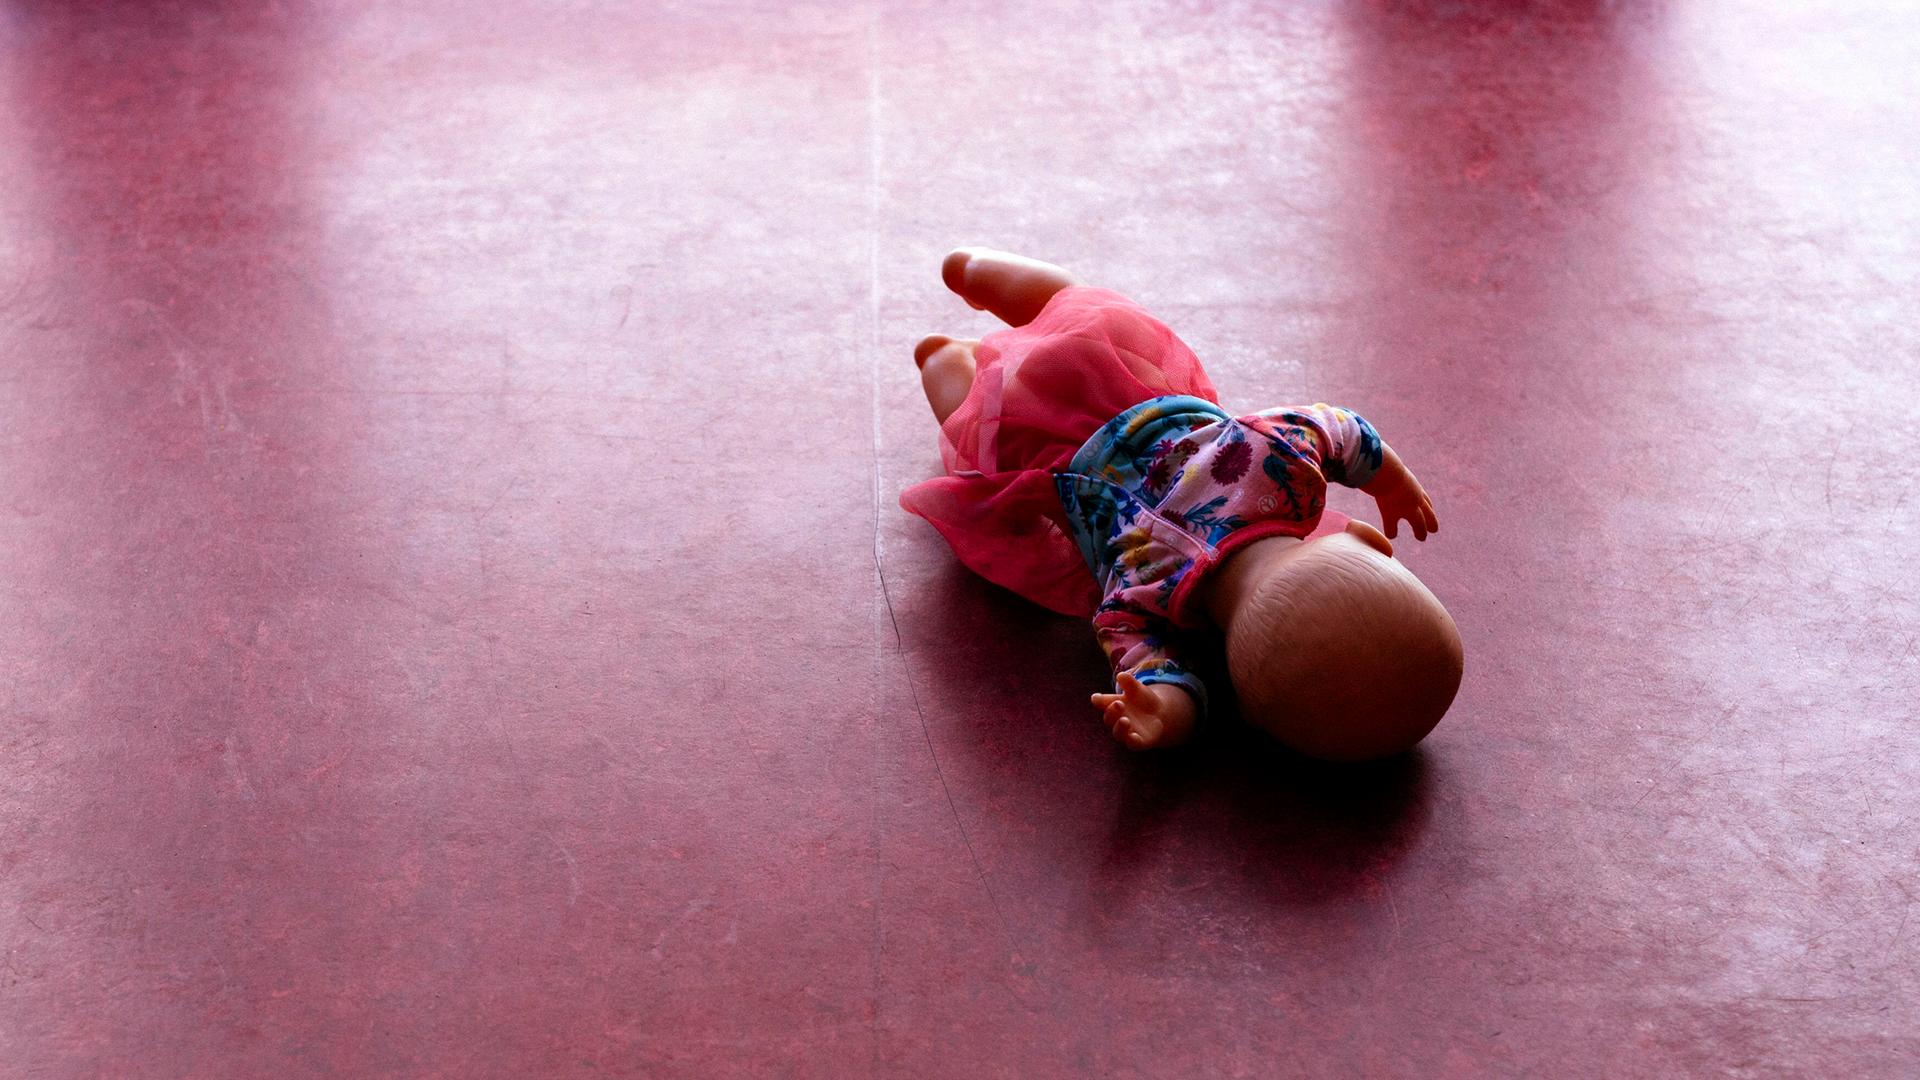 Eine Spielzeugpuppe liegt auf einem PVC-Fußboden.